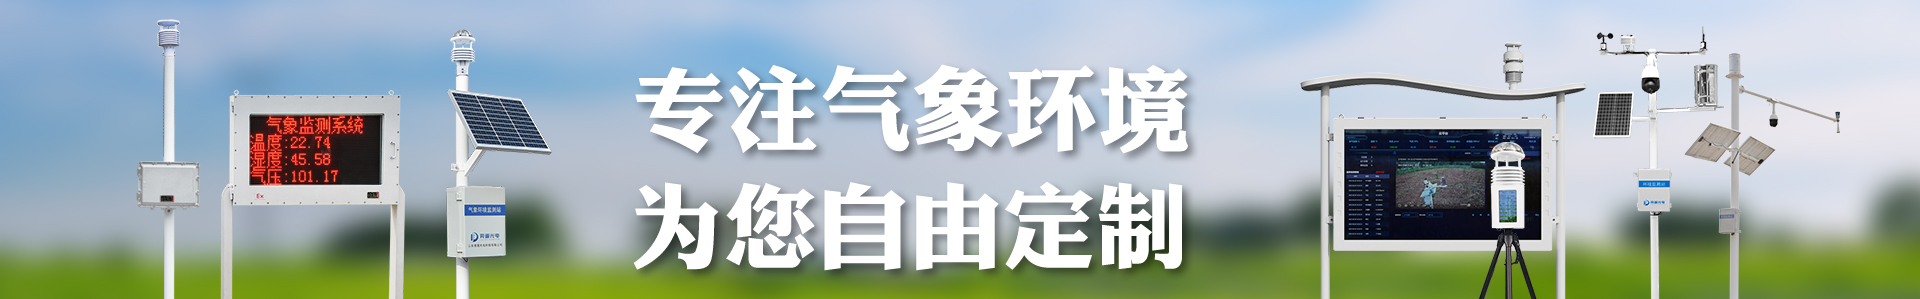 雷达水位计-雷达液位计-自动气象站-小型气象站-防爆气象站-光伏气象站-完美体育·(中国)官方网站-365WM SPORTS